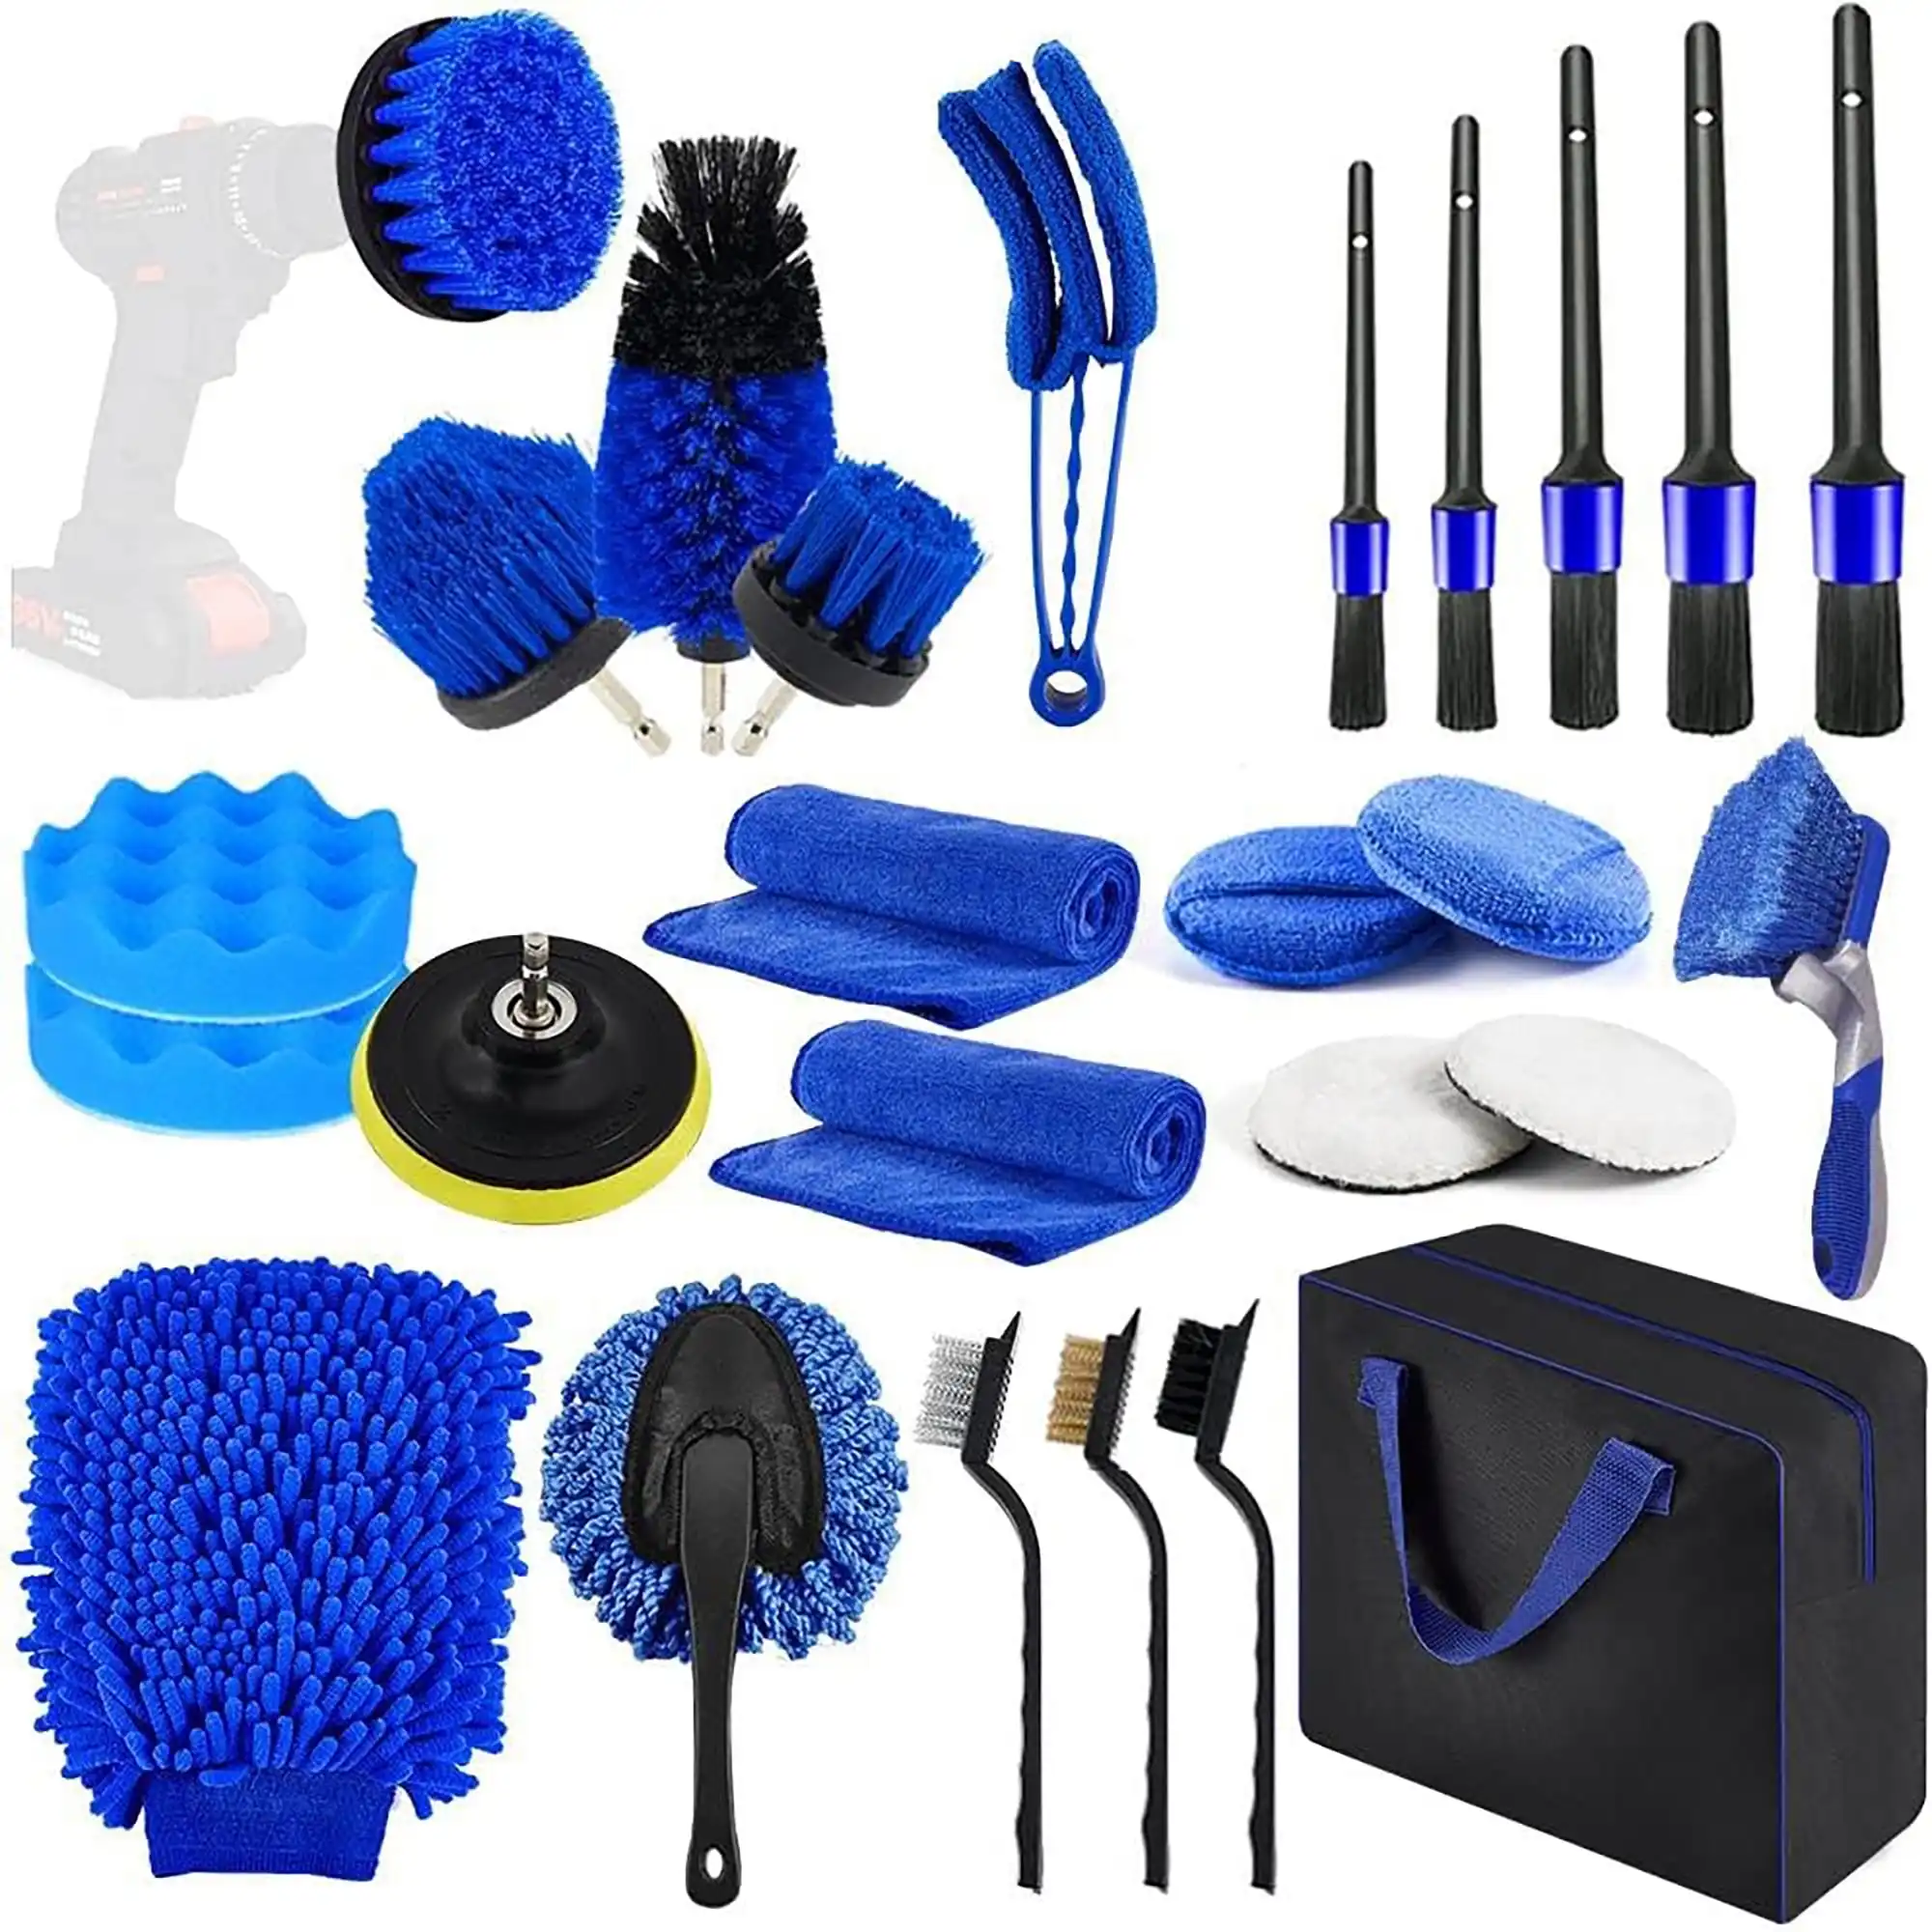 Kit de escova para limpeza de carro, kit com 27 peças, escova para lavar carro com toalhas, escova para pneus, ferramentas de lavagem detalhadas